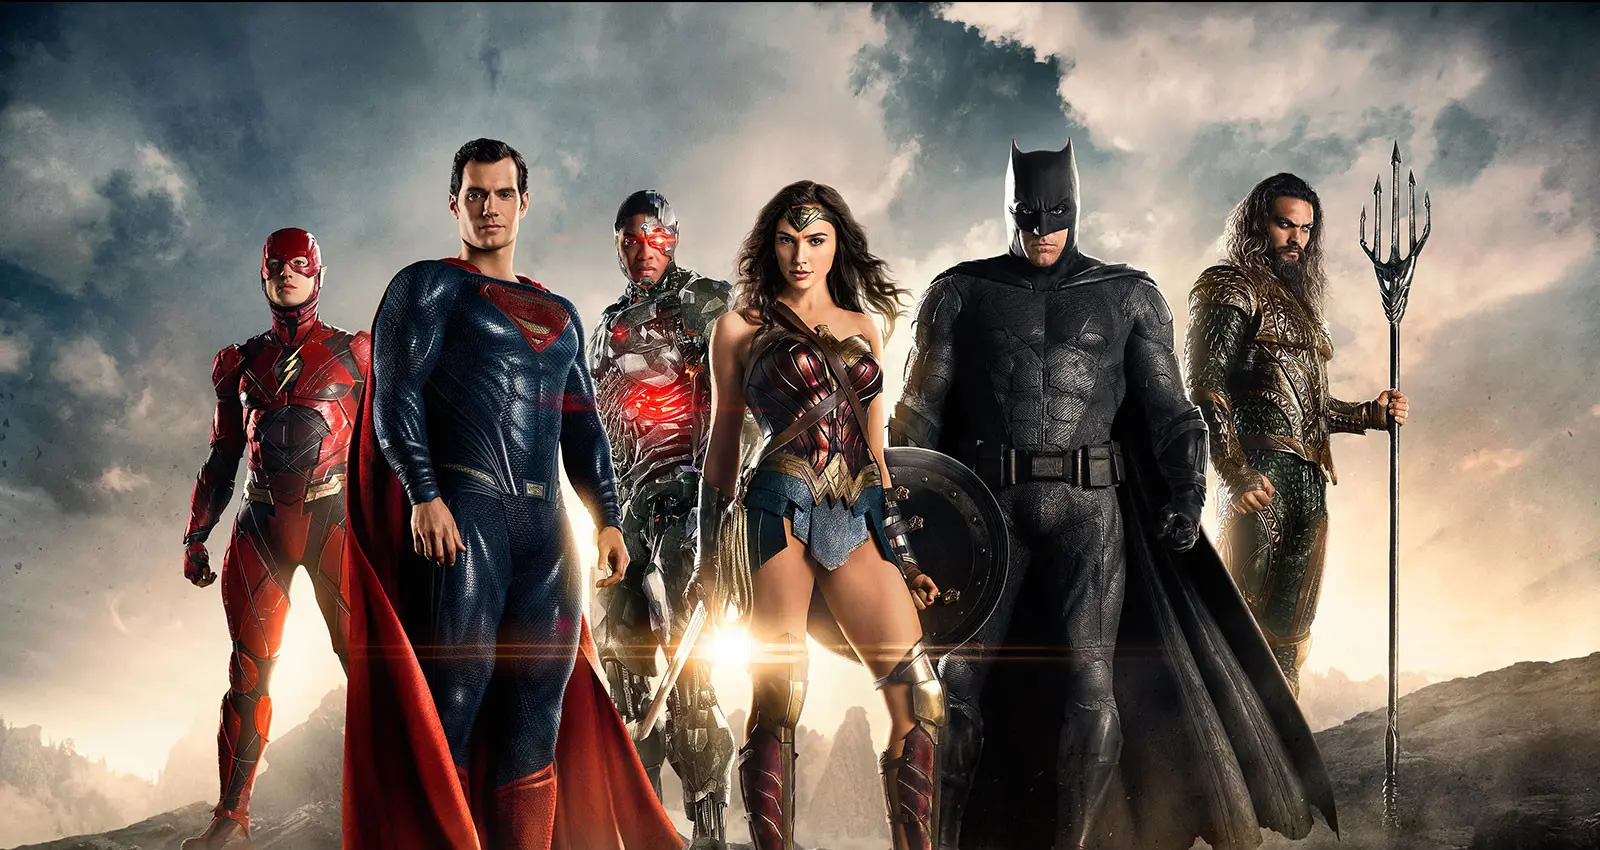 Sementara itu Justice League sendiri menerima rating B+ di CinemaStrore. Film ini pun dinilai mengecewakan dengan pendapatan yang jauh lebih kecil dari film DC lainnya yakni, Wonder Woman. (justiceleaguethemovie)